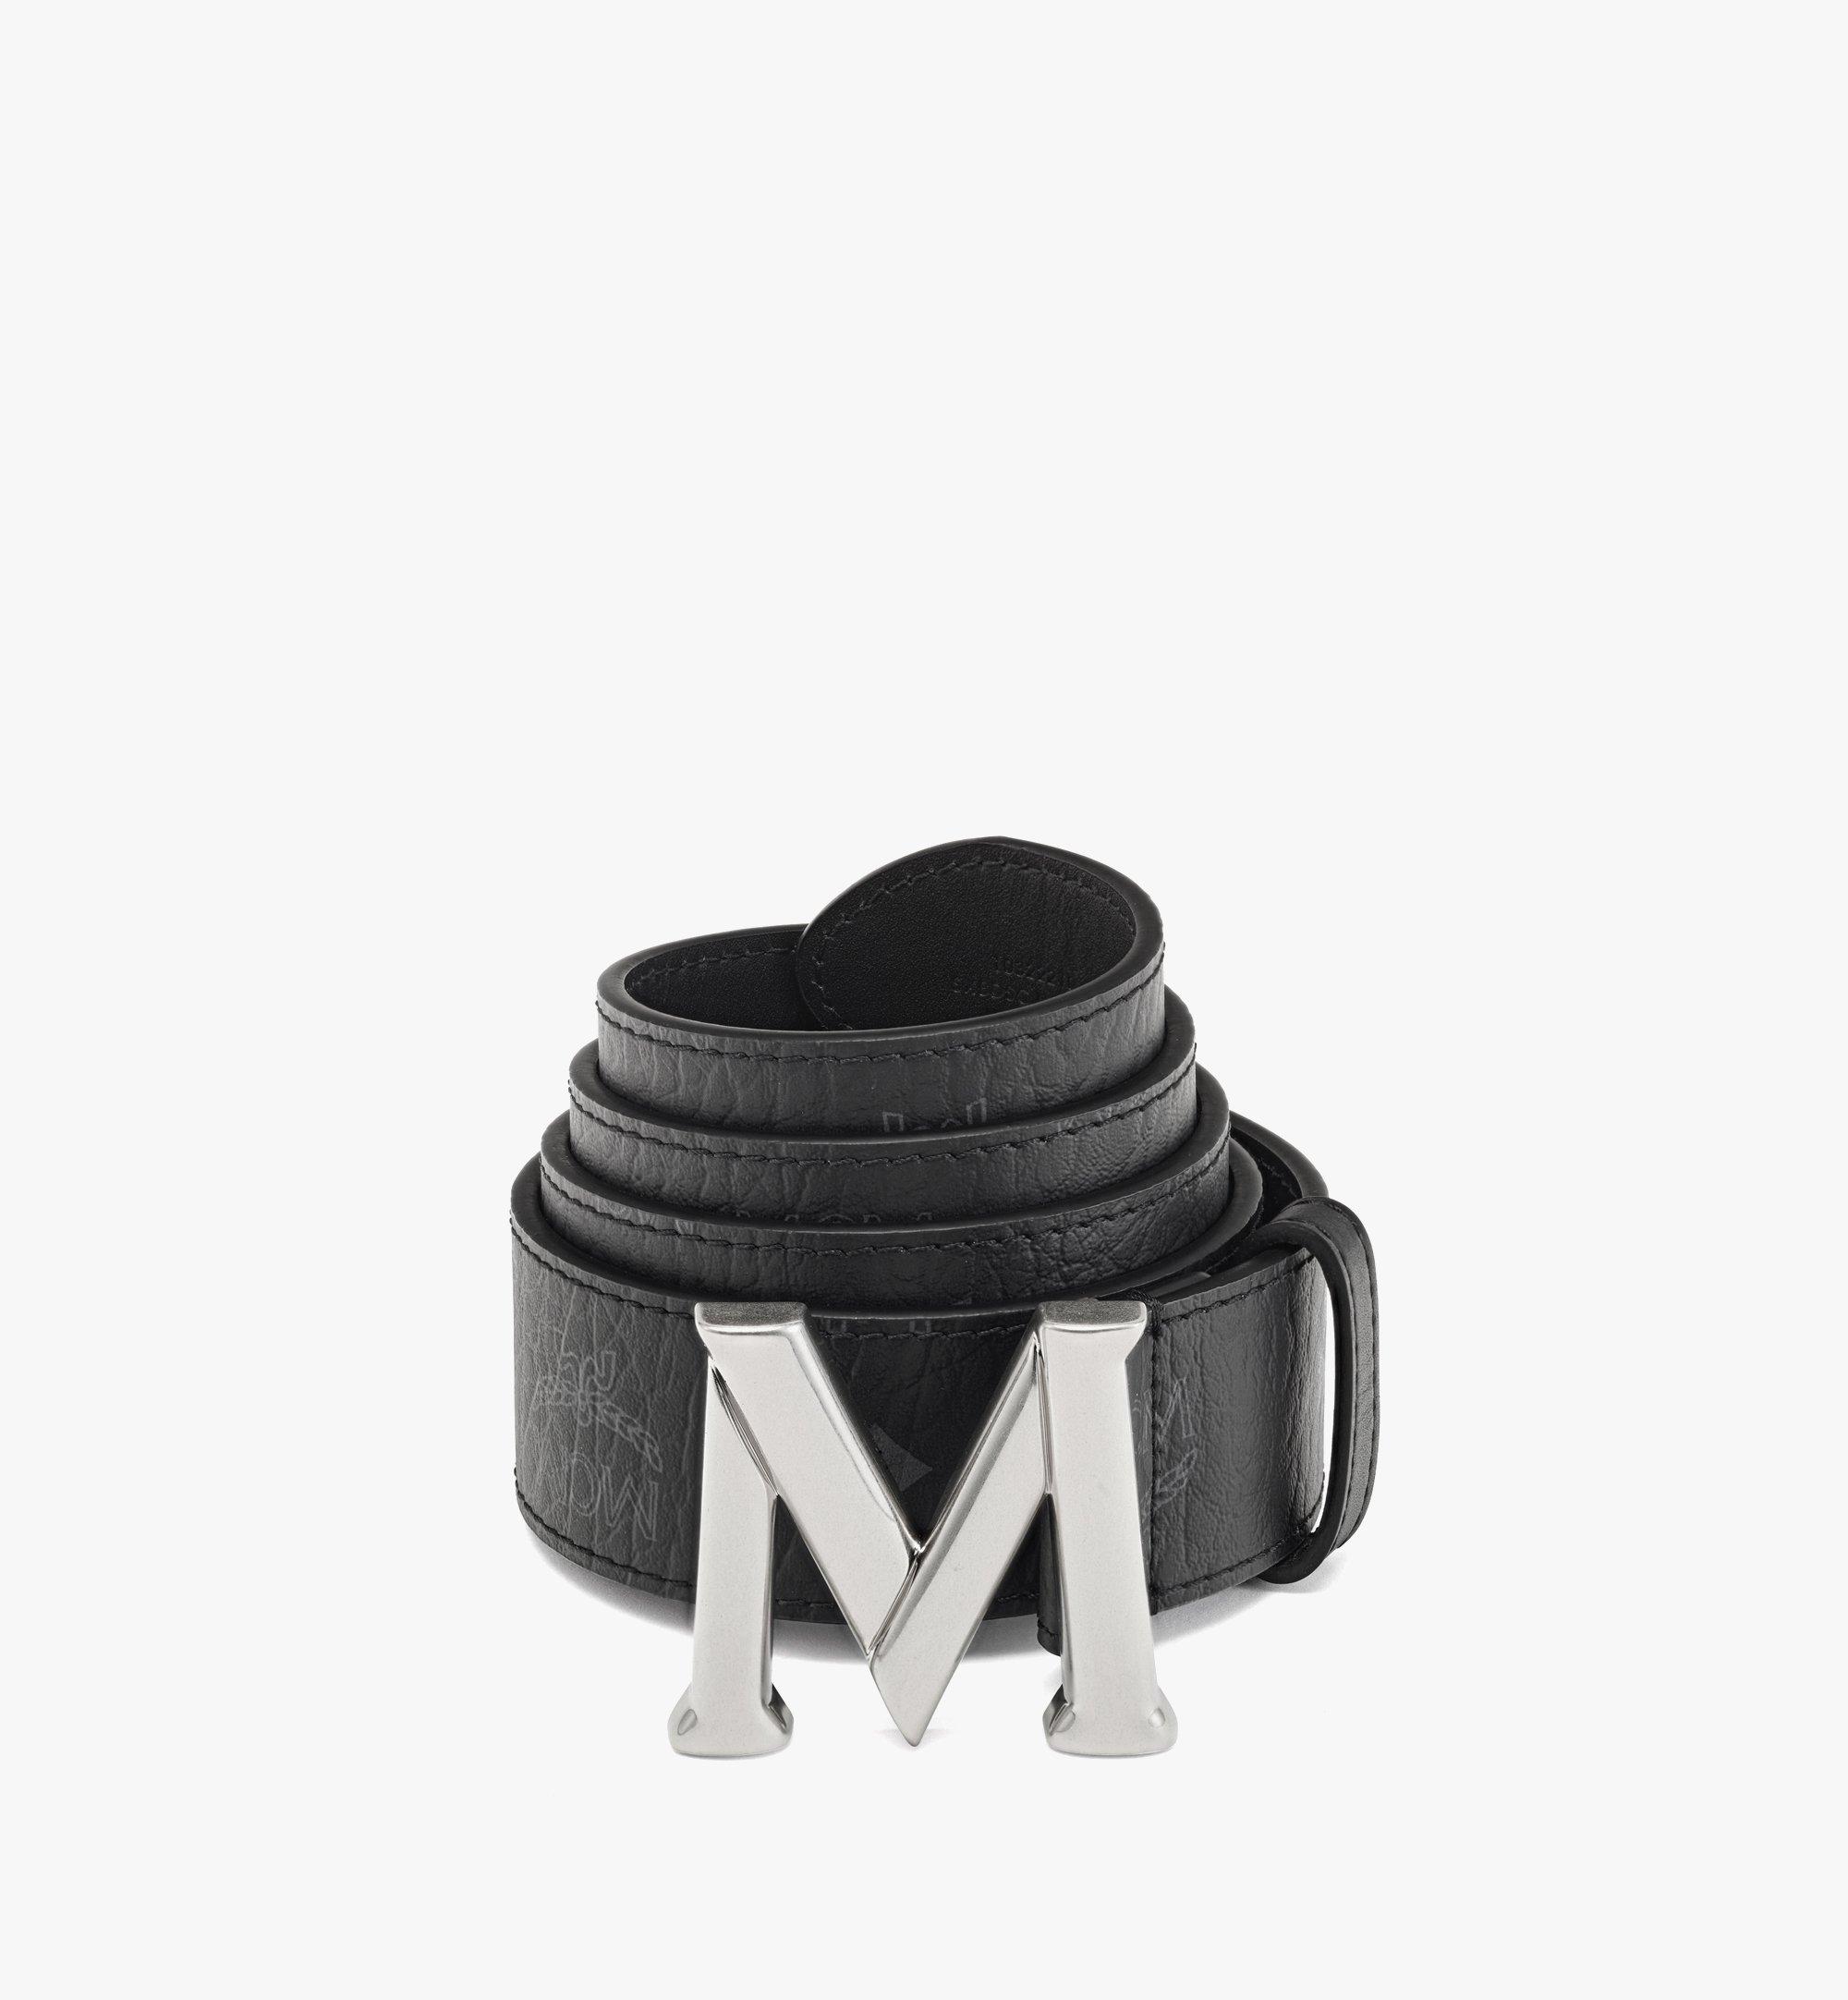 MCM Red Belt - Designer Belts - Timeless Kicks  Bristol Boutique for  Sneakers, Handbags & More